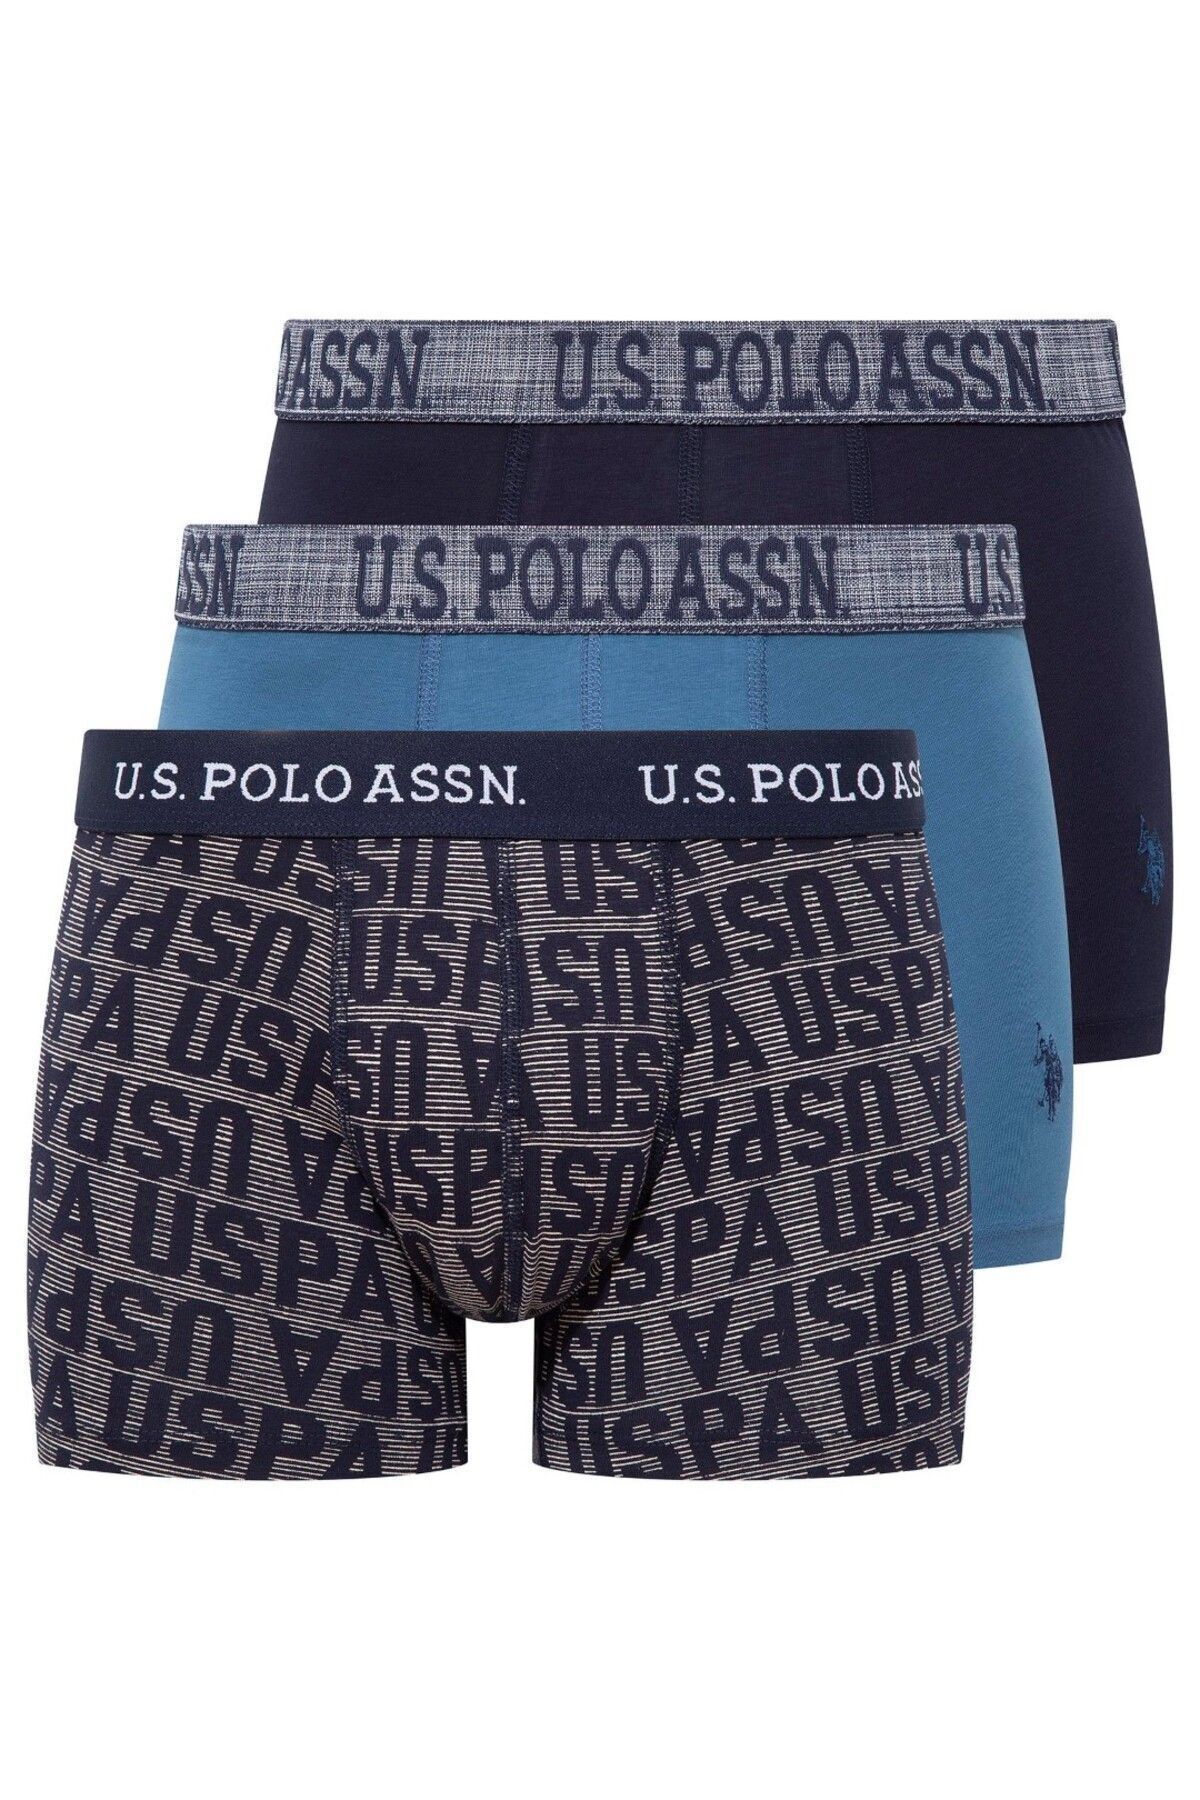 U.S. Polo Assn. Erkek Baskılı Antrasit- Siyah  Boxer